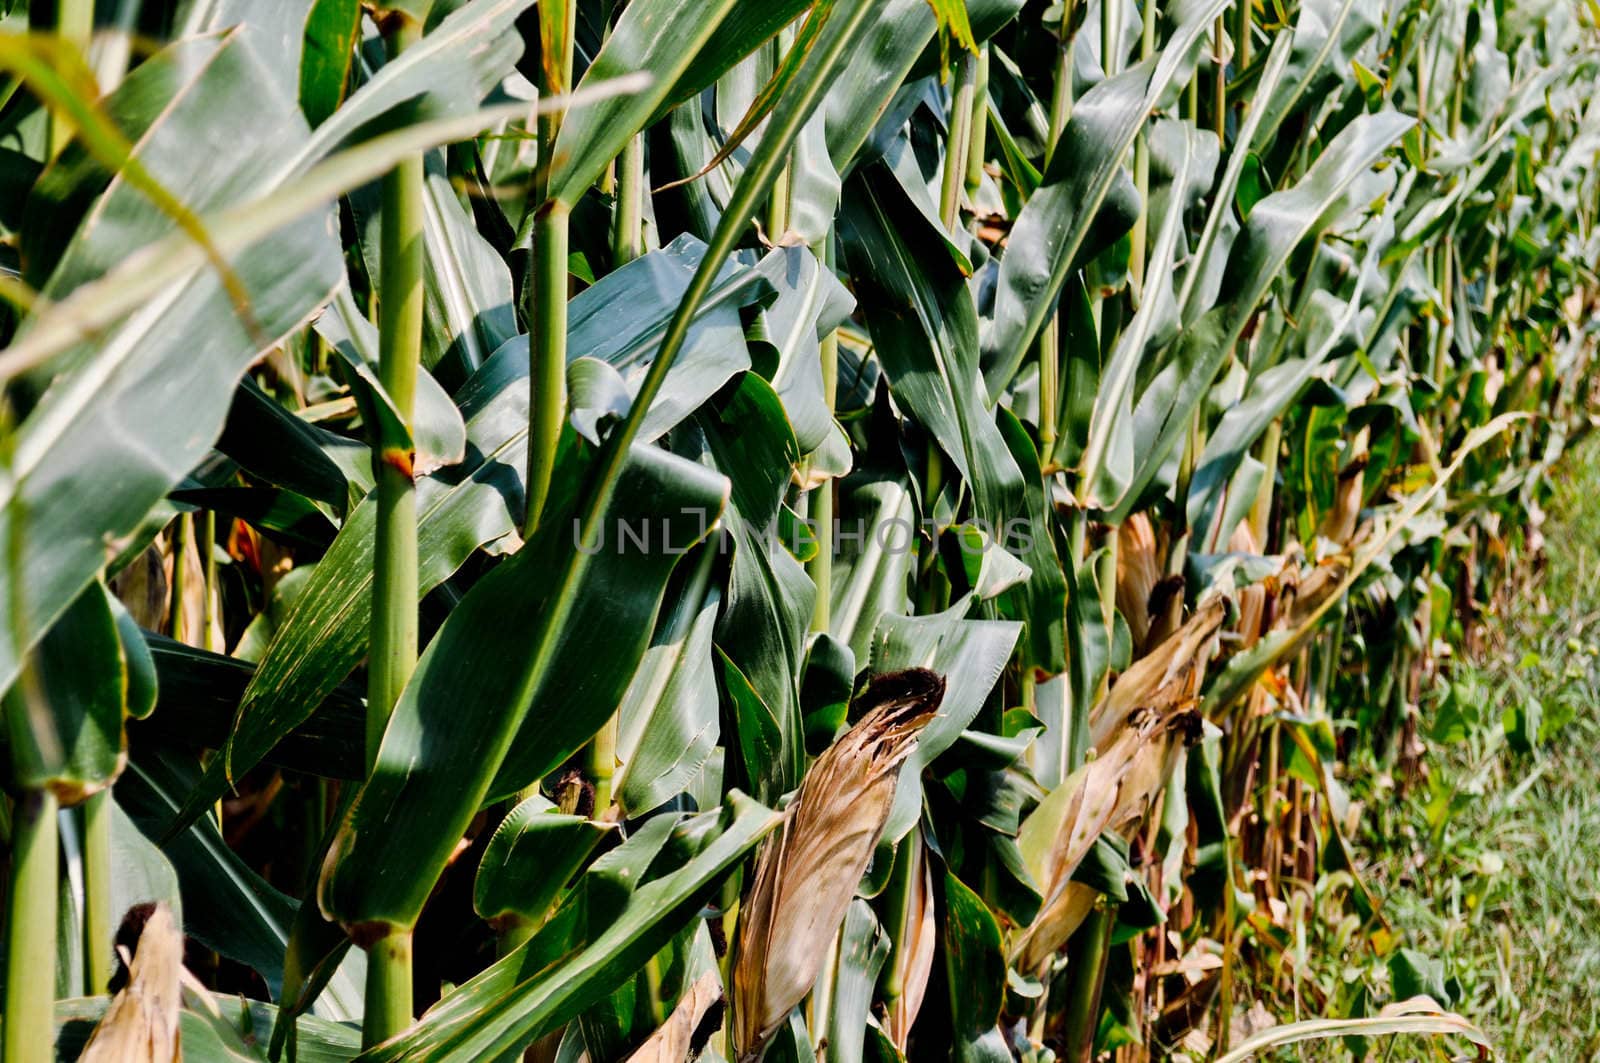 Corn field by RefocusPhoto